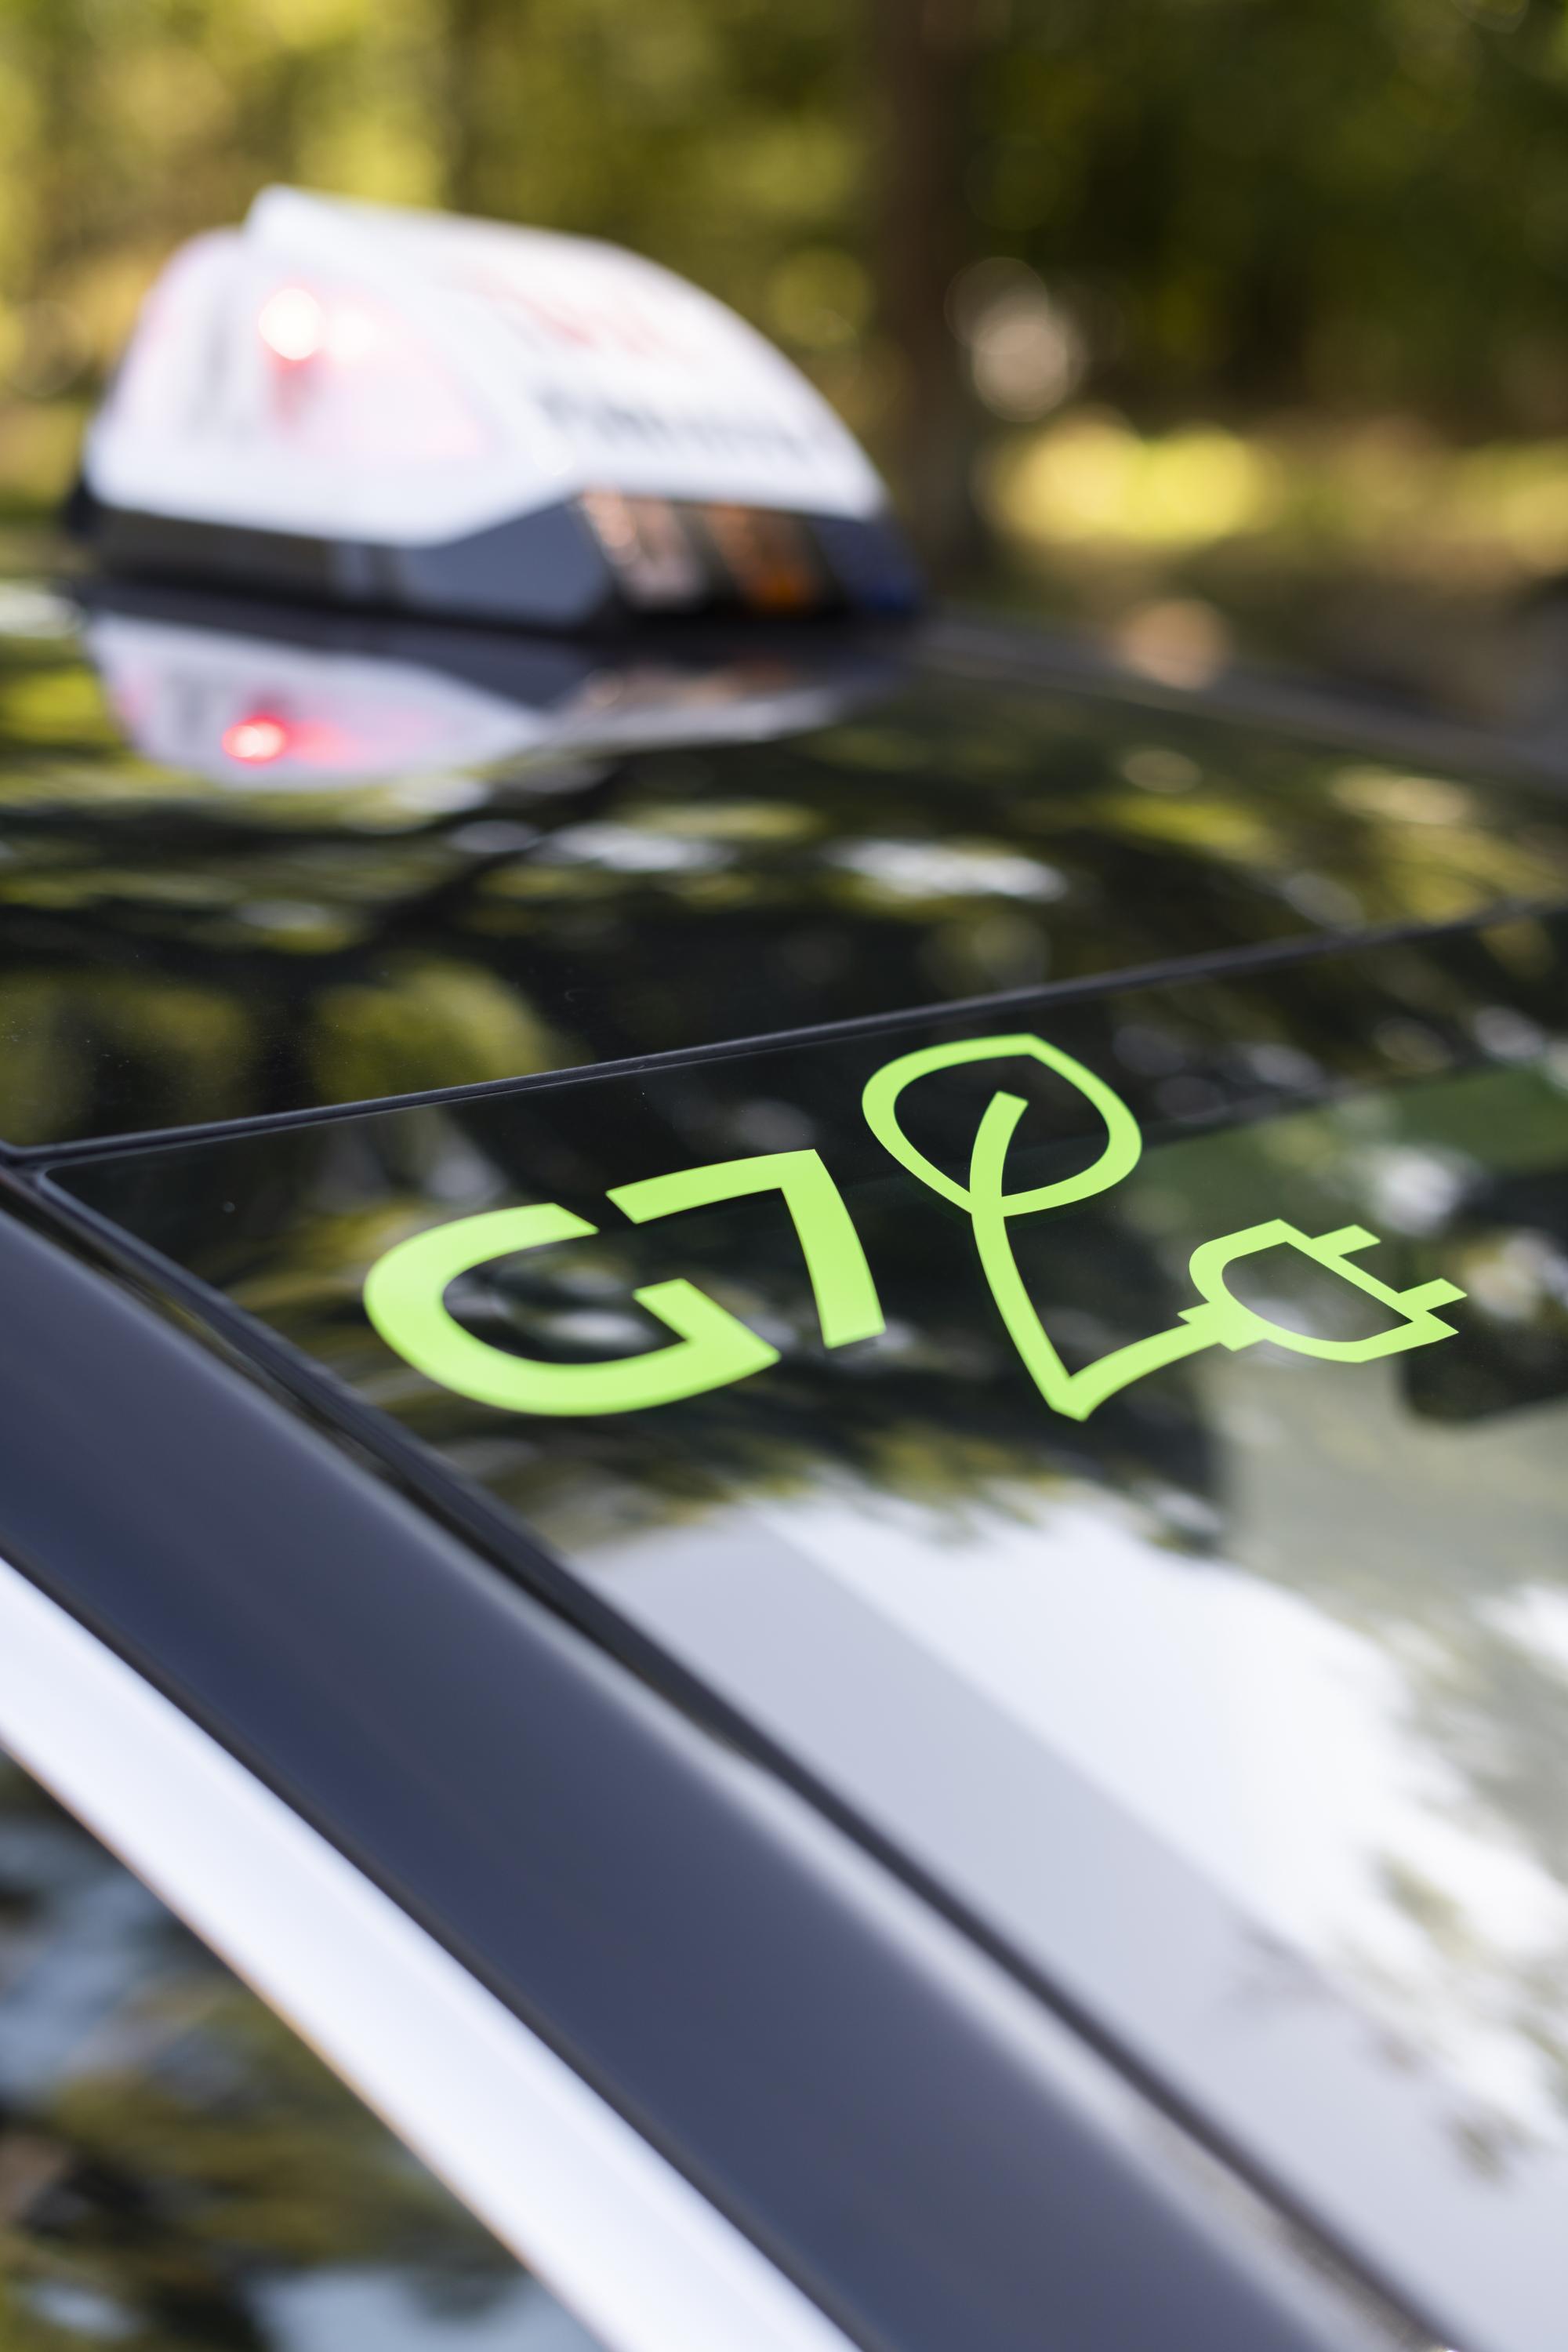 G7 se donne l’objectif d’atteindre 30% de véhicules électriques dans sa flotte en 2030